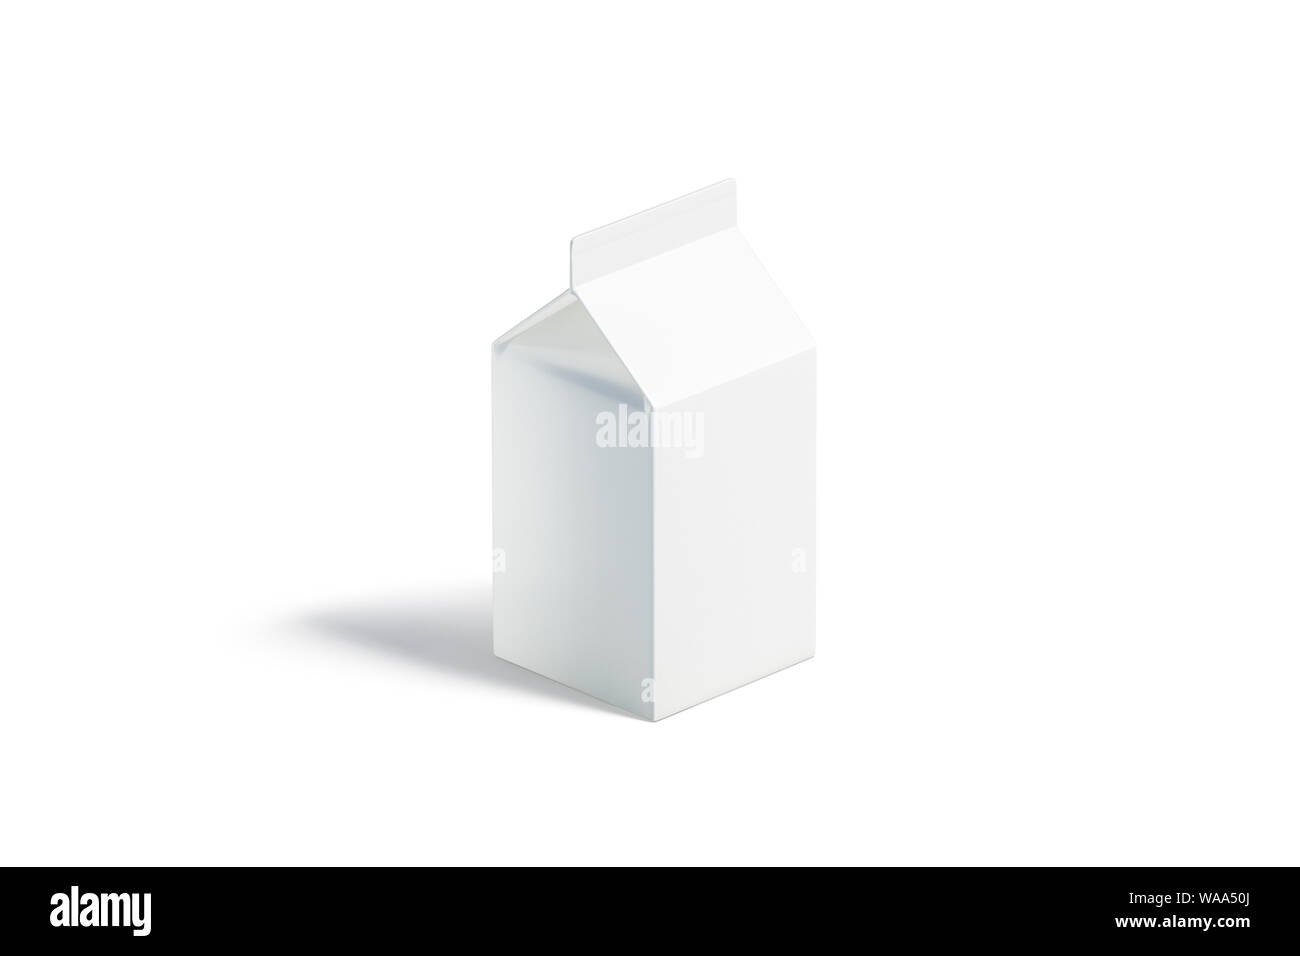 leche pequeña pack, vista lateral, 3D rendering. Ladrillo de cartón vacío de maquetas para bebidas, aislado. Claro prisma de cartón caja con kefir Fotografía de stock Alamy